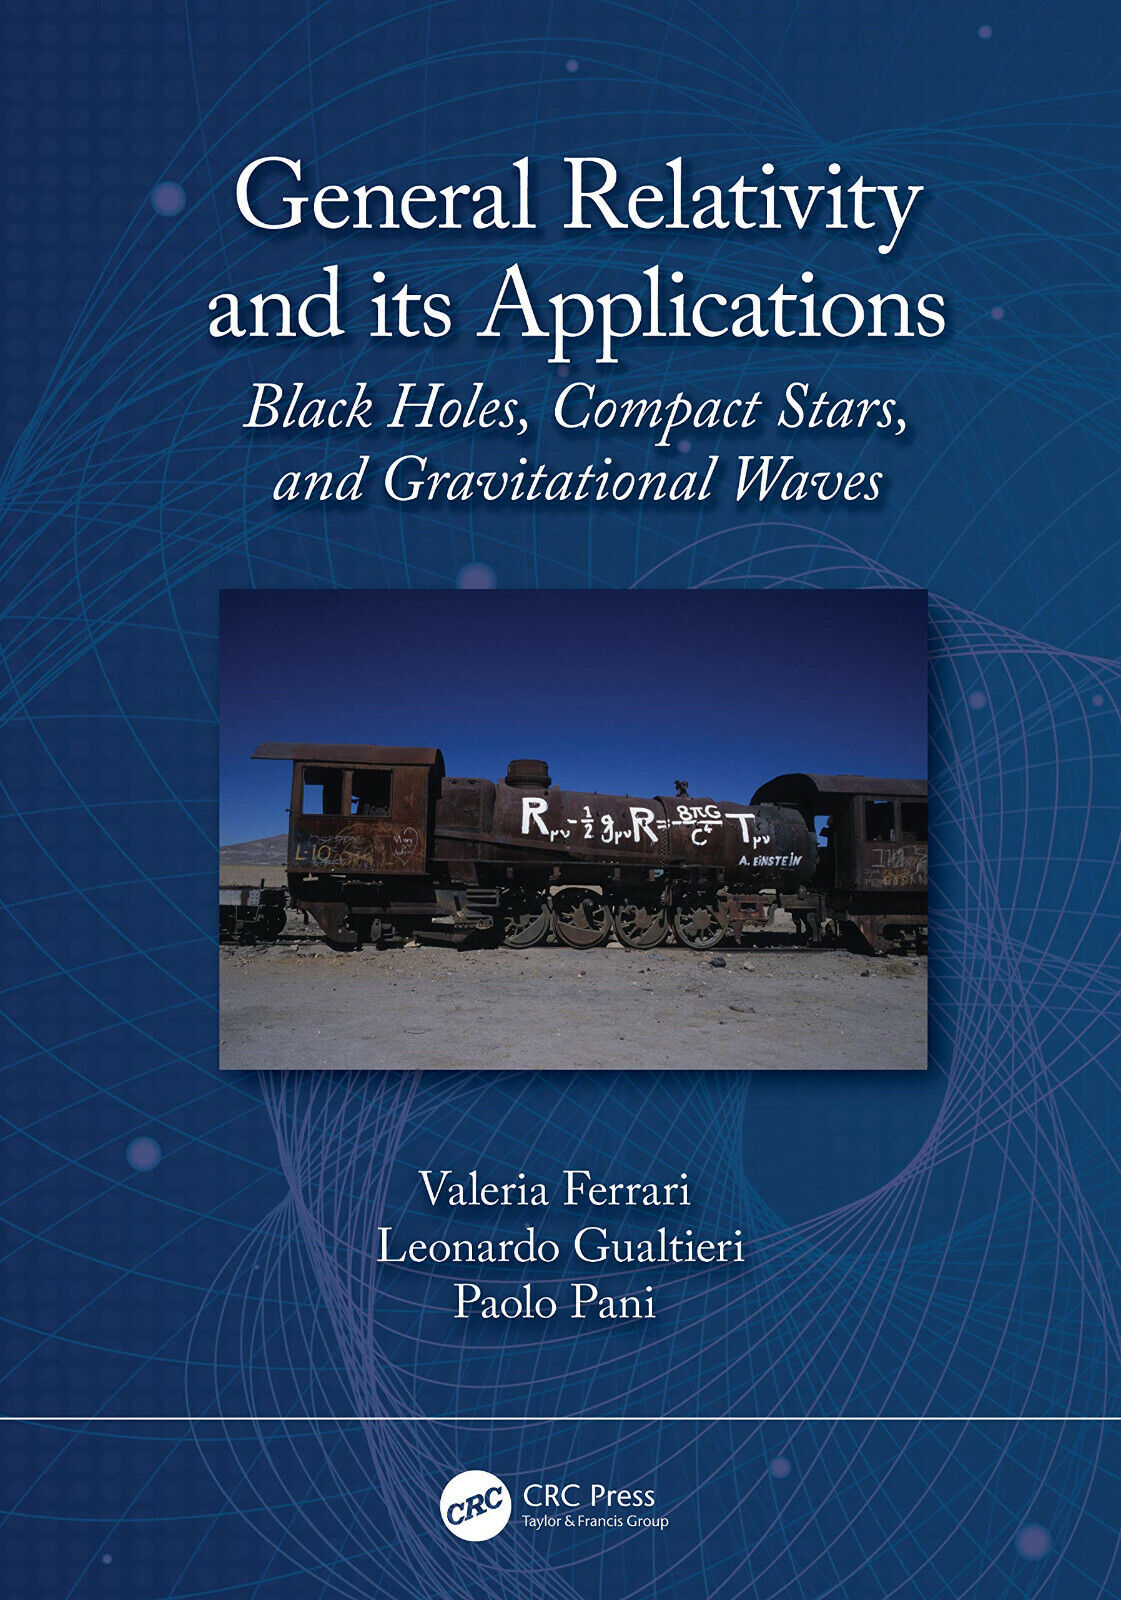 General Relativity and its Applications - Valeria Ferrari - CRC Press, 2020